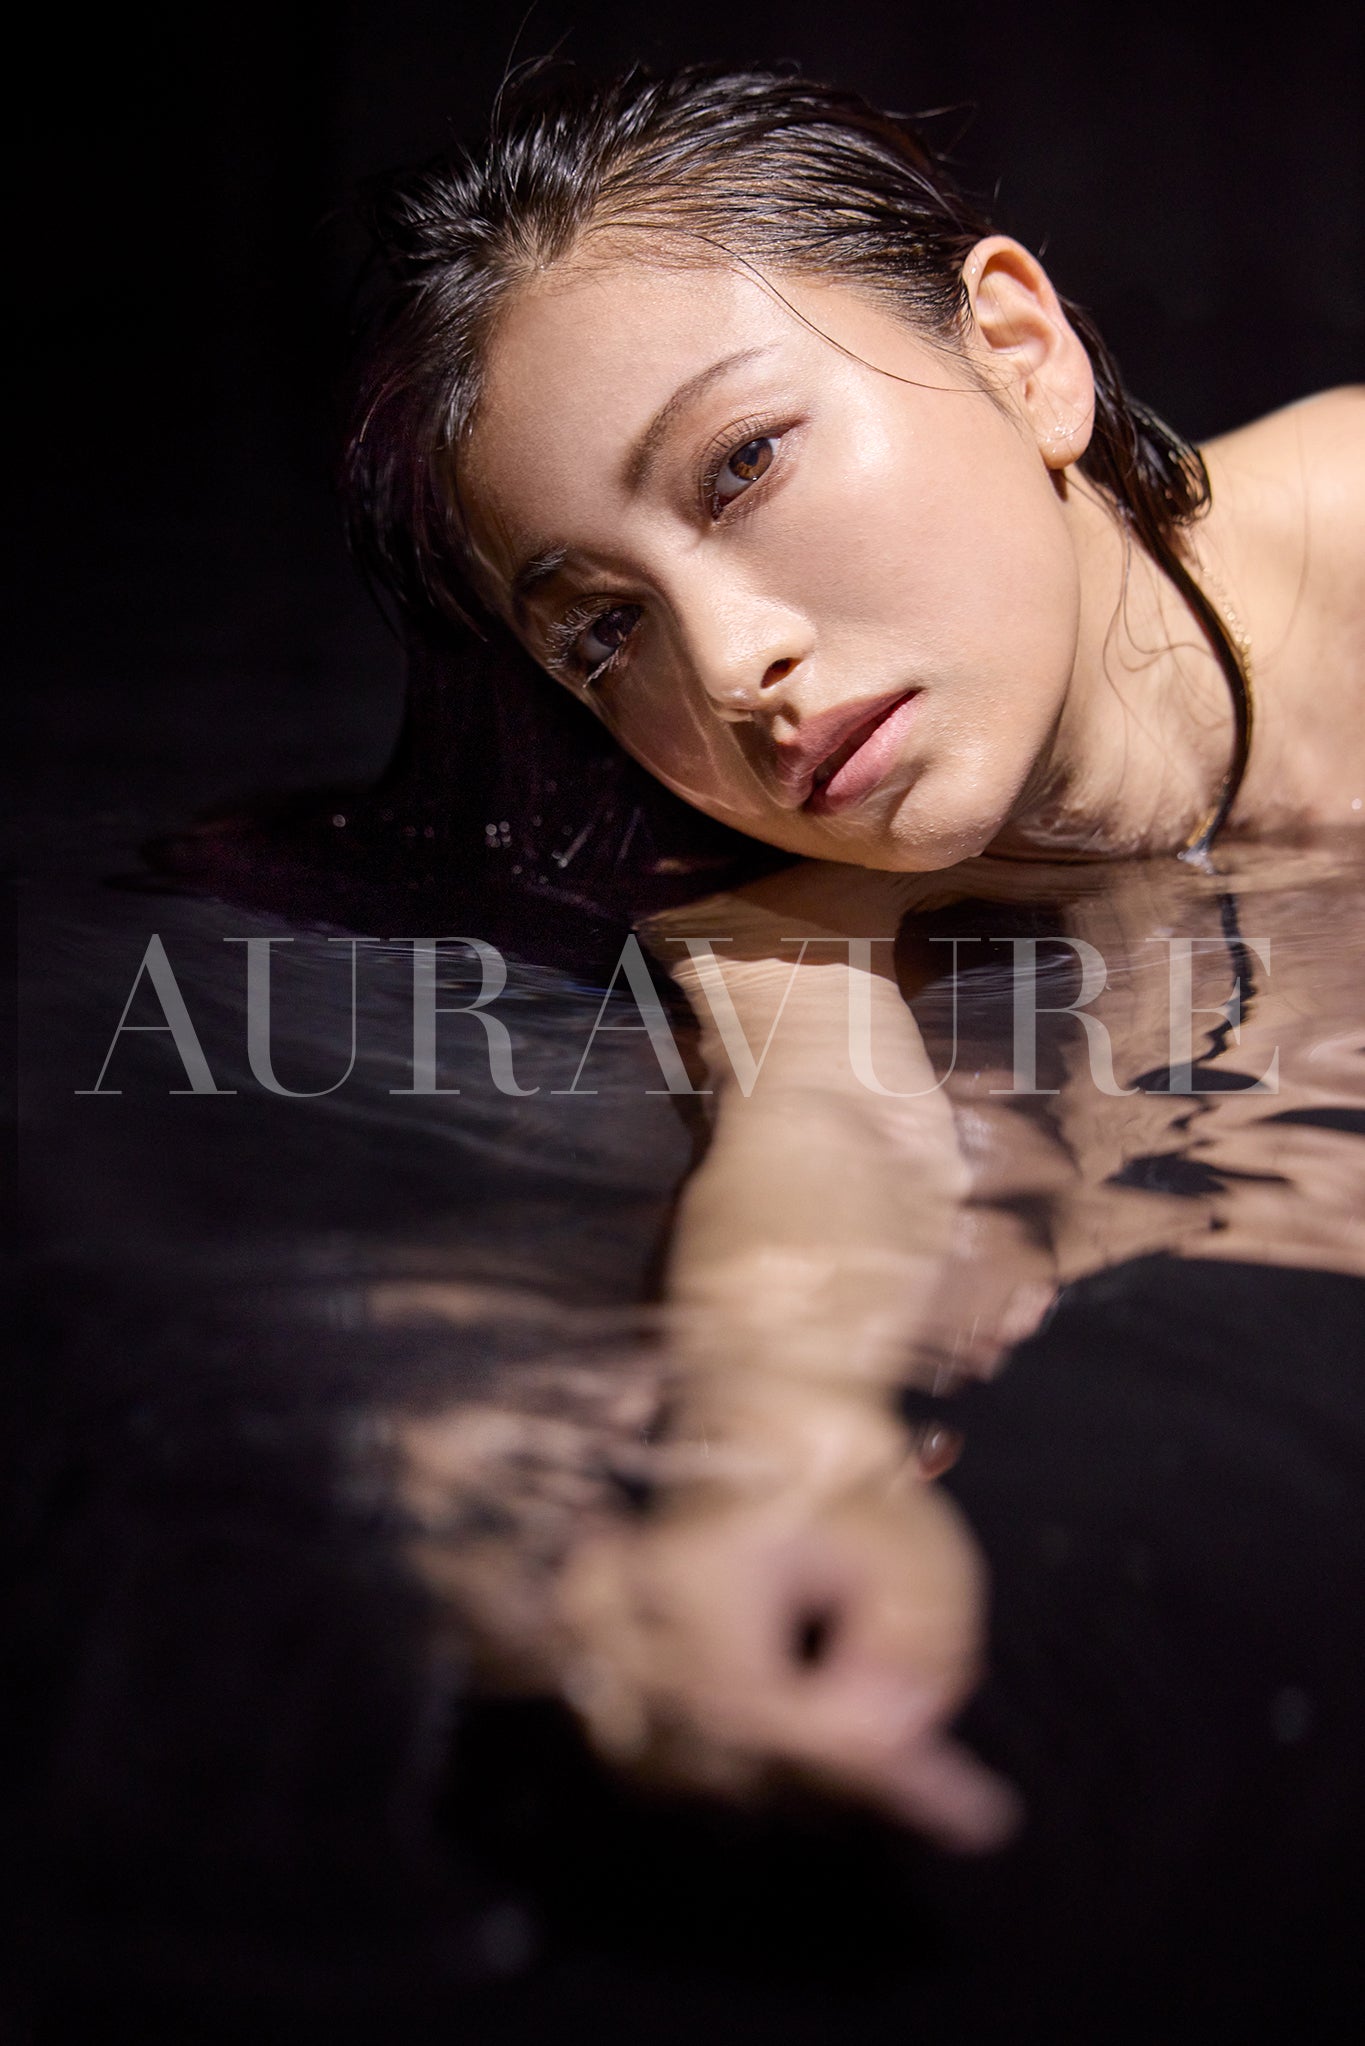 Auravure Magazine #2, Édition Complète avec le Livre Numérique et des Vidéos Bonus de Suzuki Takara